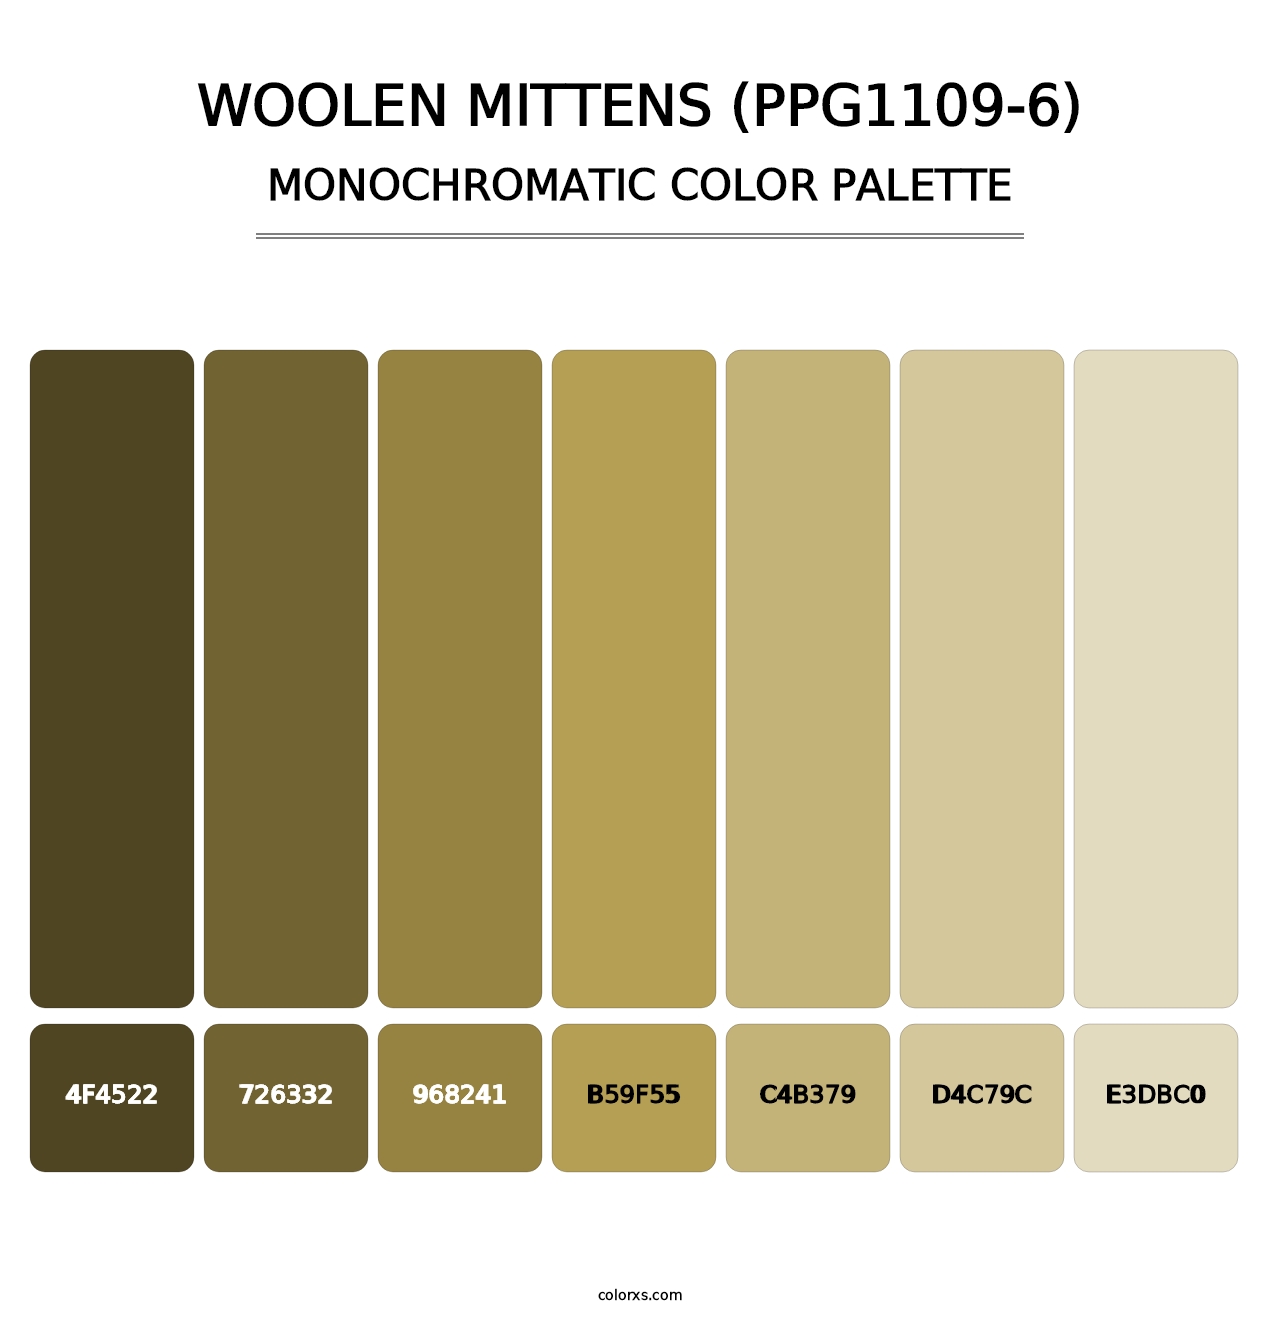 Woolen Mittens (PPG1109-6) - Monochromatic Color Palette